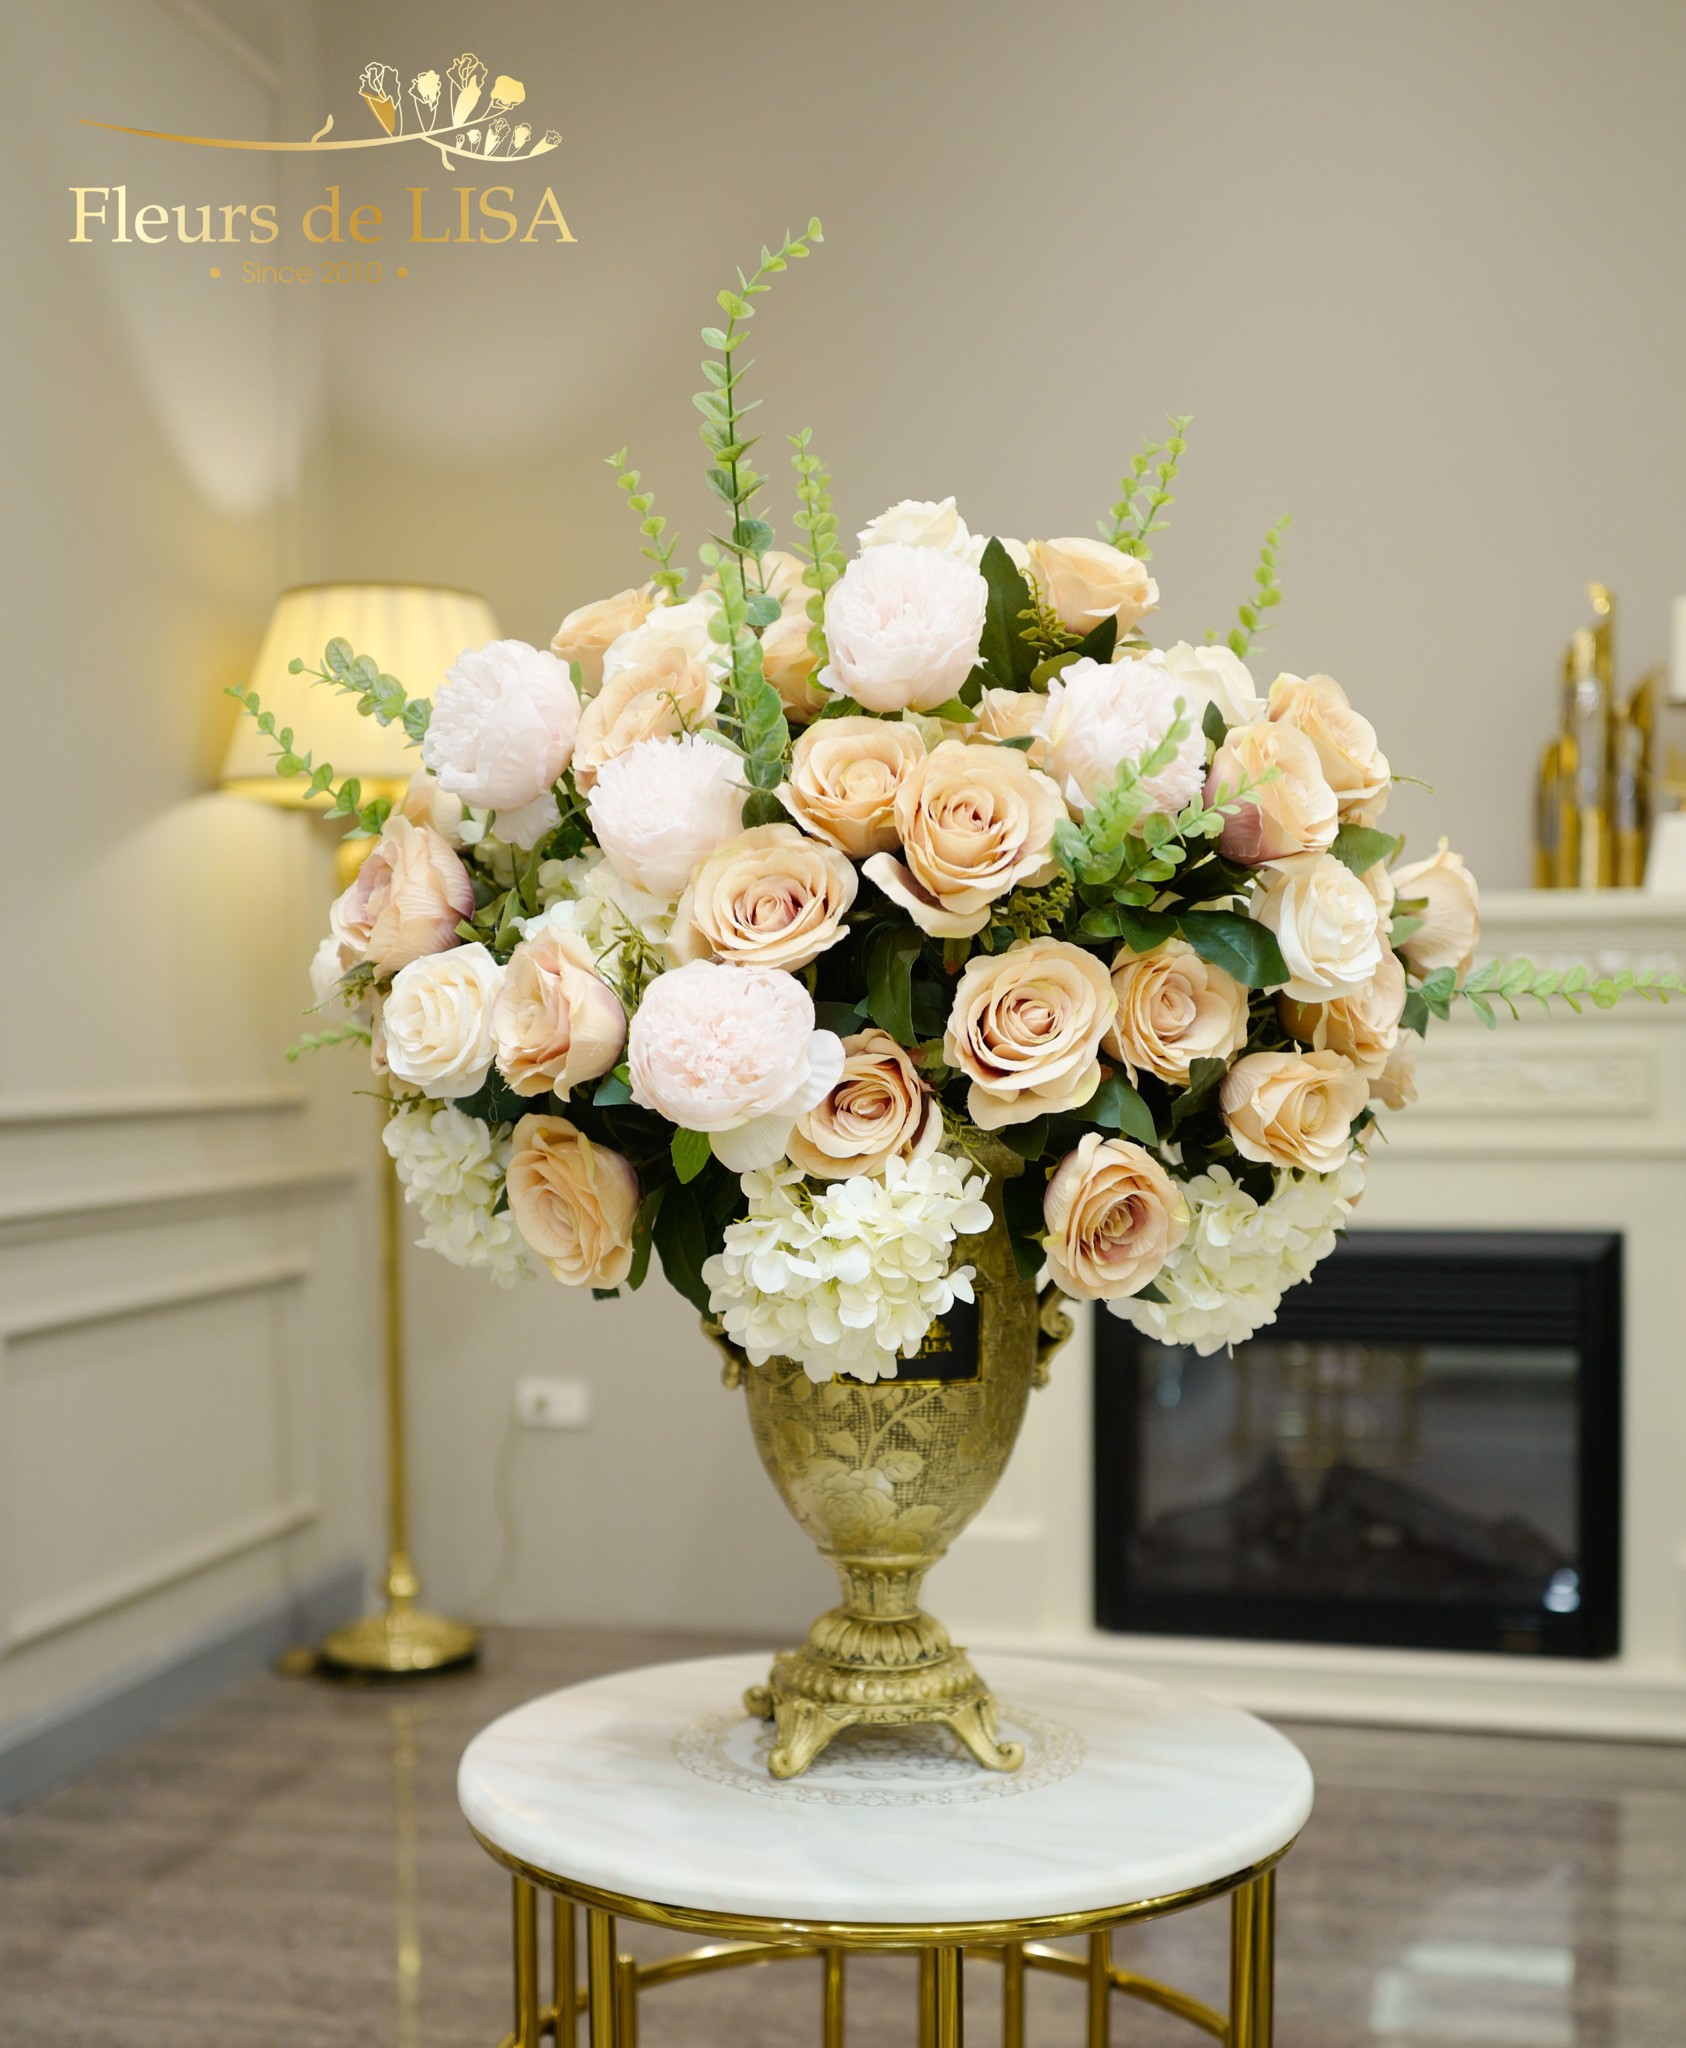  Aerenia - Bình hoa lụa trang trí nội thất 